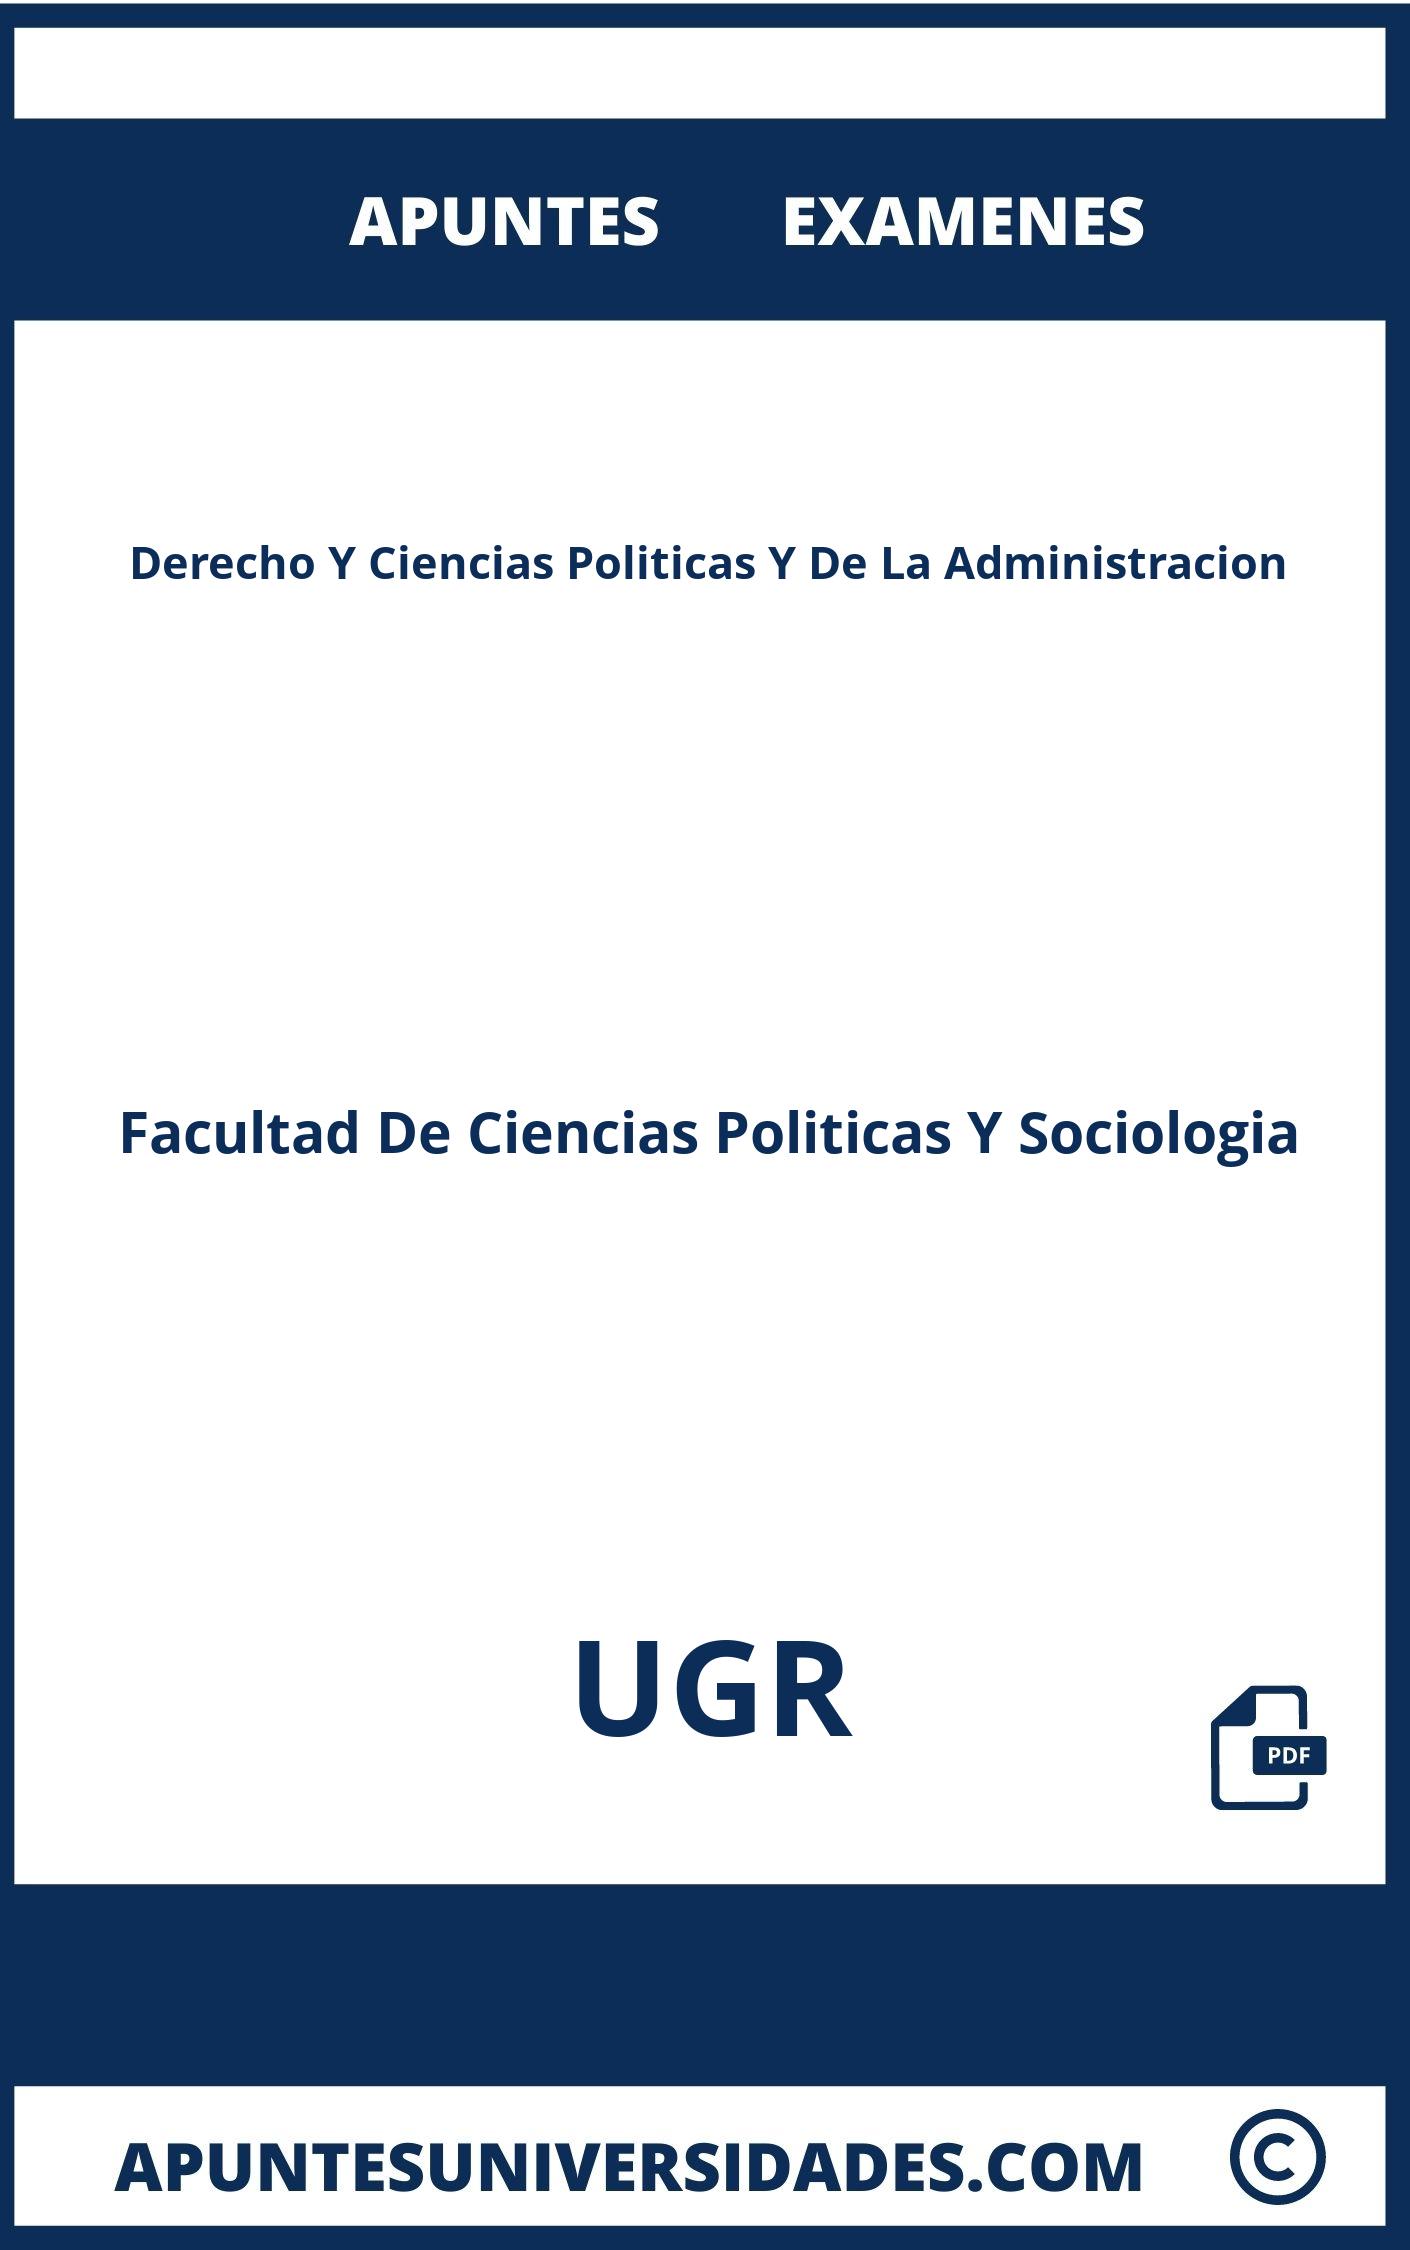 Apuntes y Examenes Derecho Y Ciencias Politicas Y De La Administracion UGR